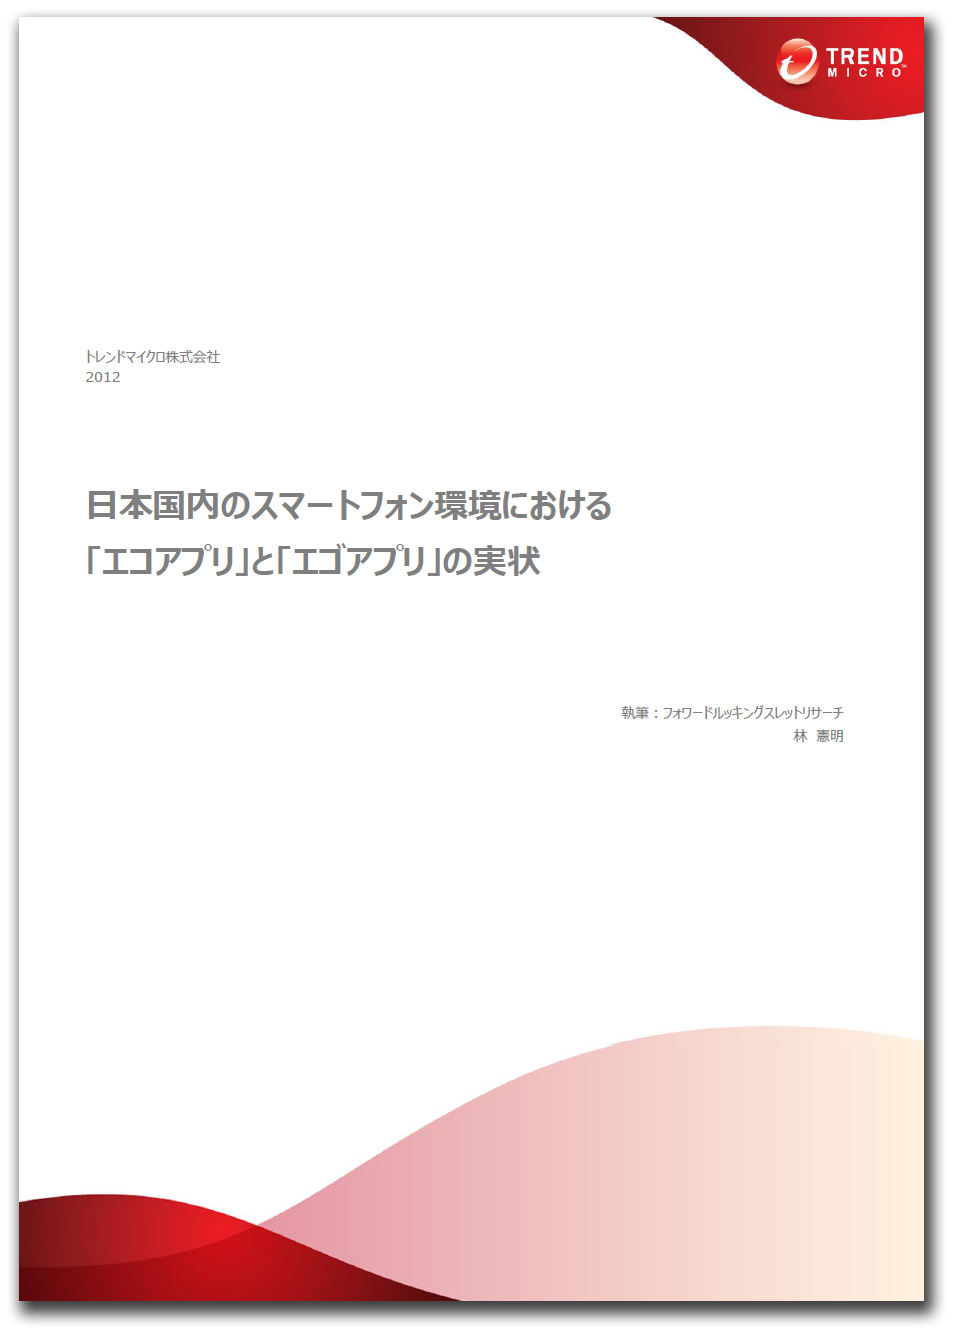 『日本国内のスマートフォン環境における「エゴアプリ」と「エコアプリ」の実状』